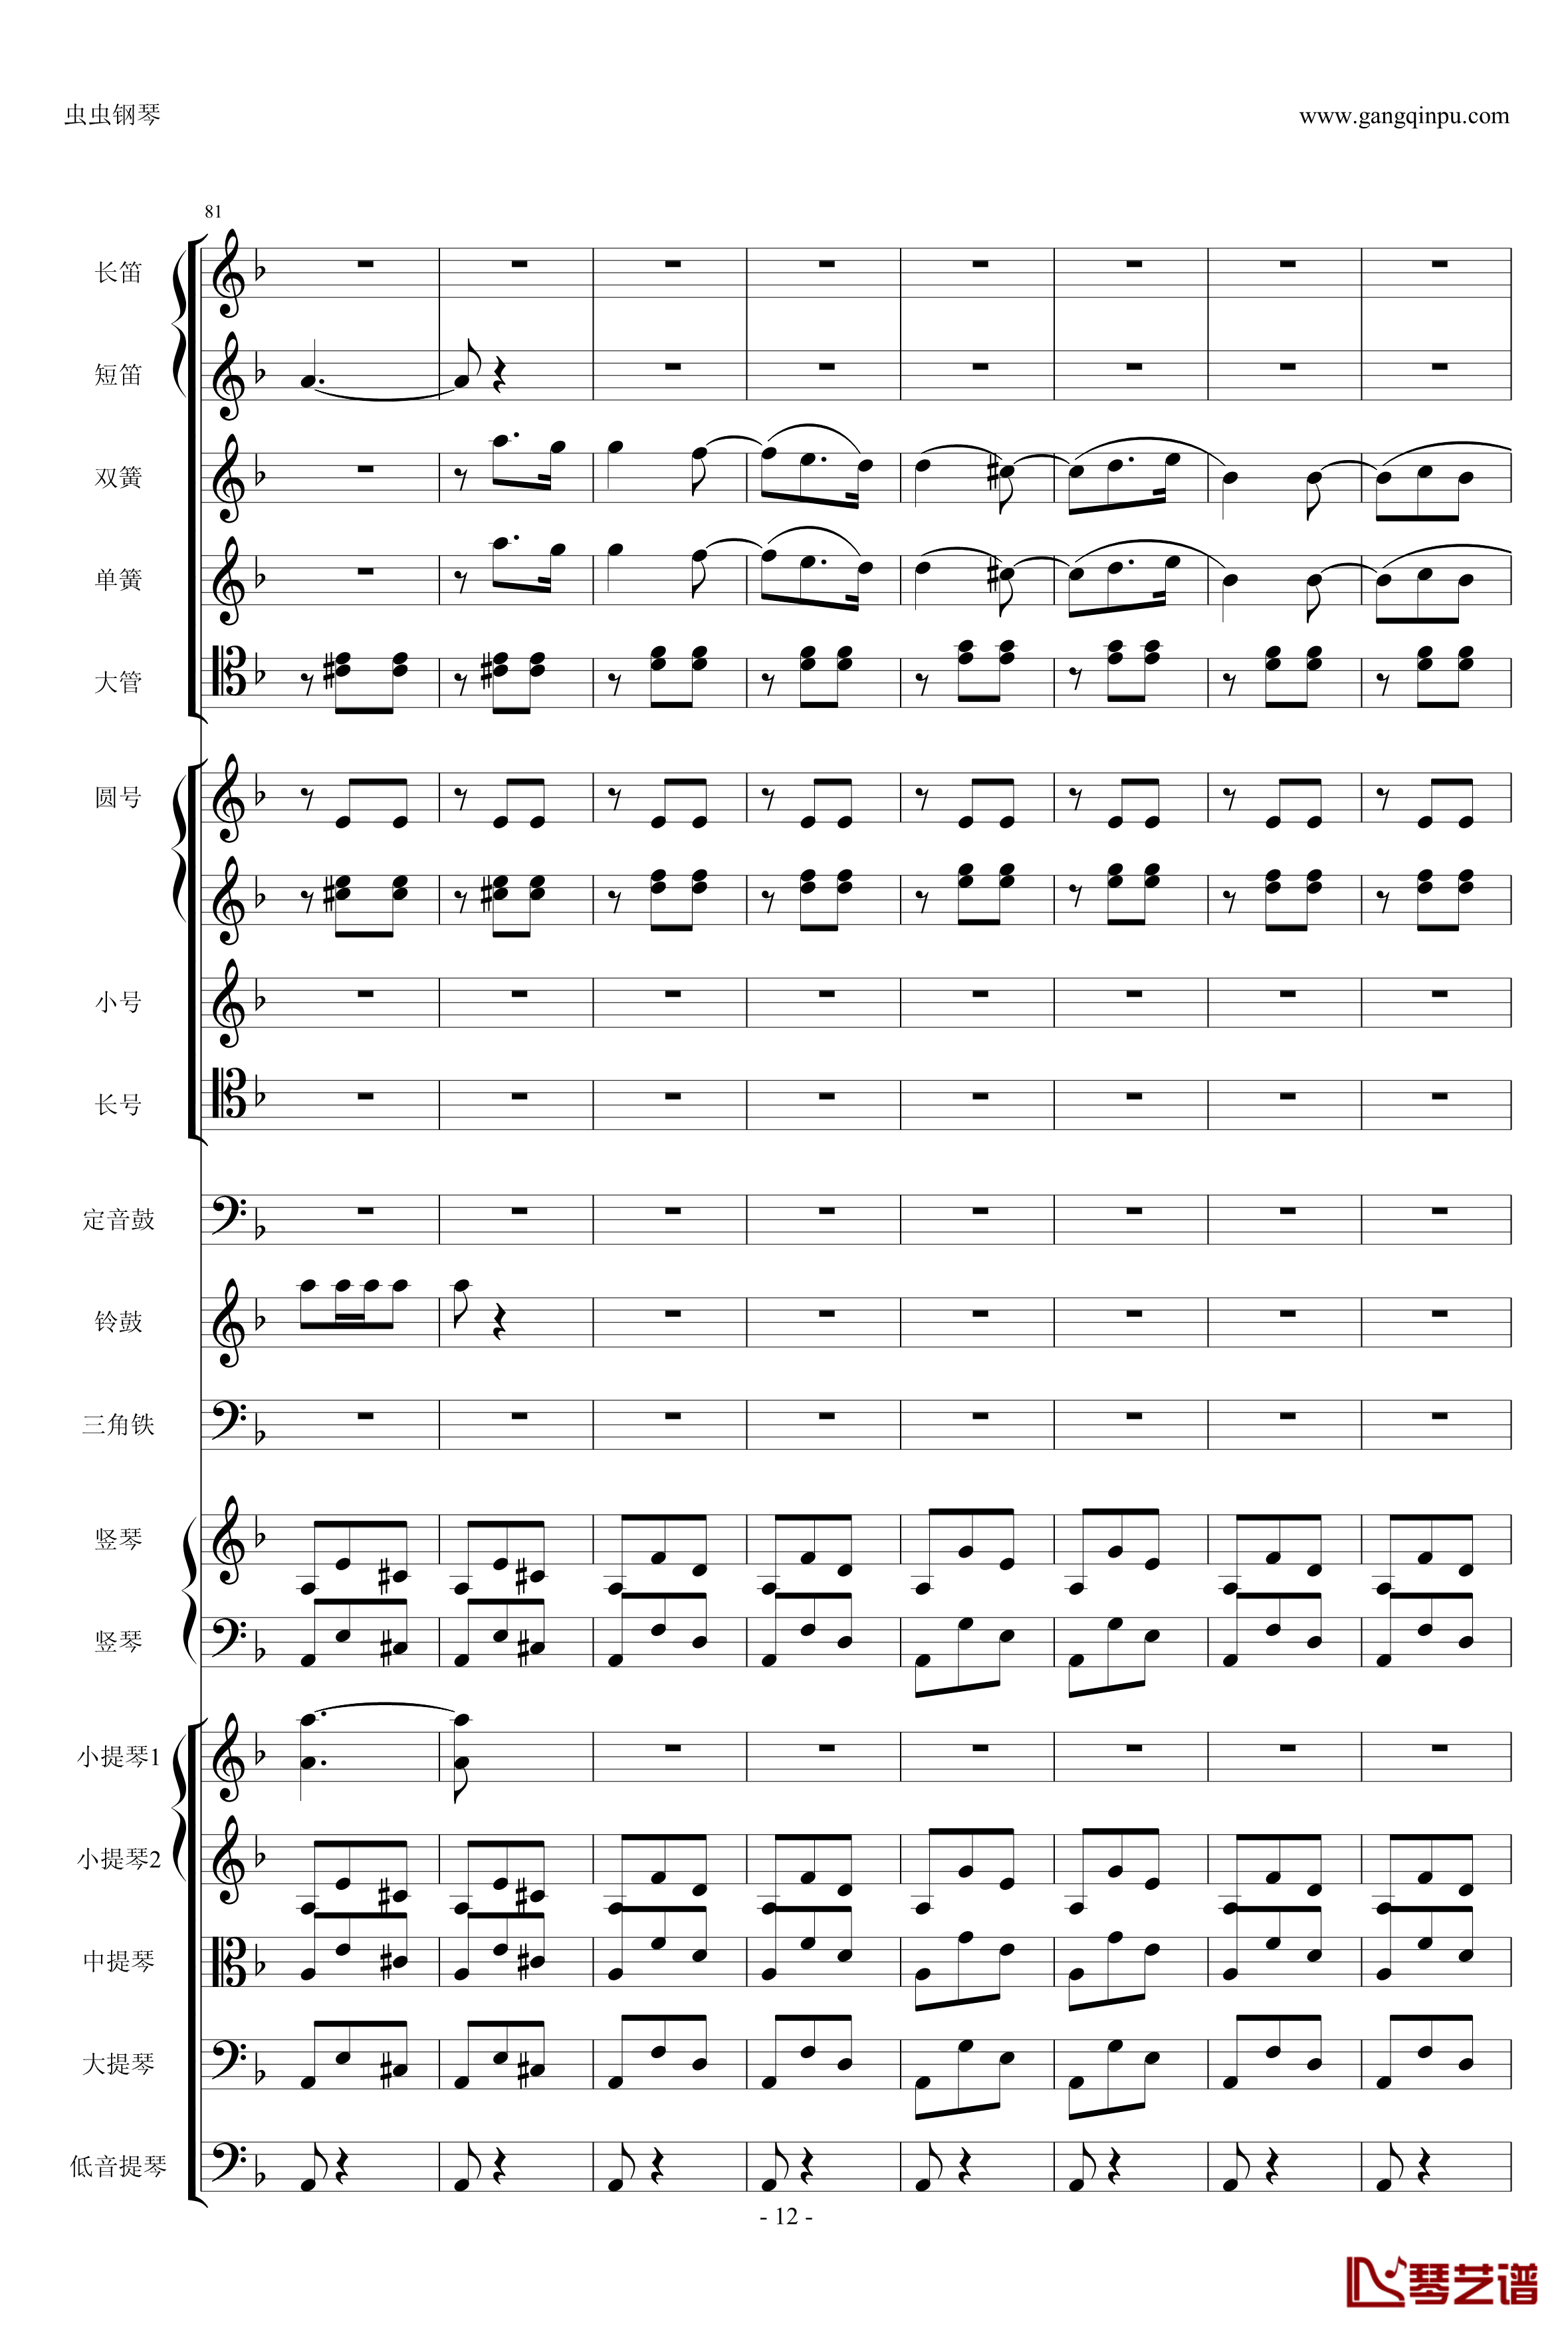 歌剧卡门选段钢琴谱-比才-Bizet- 第四幕间奏曲12